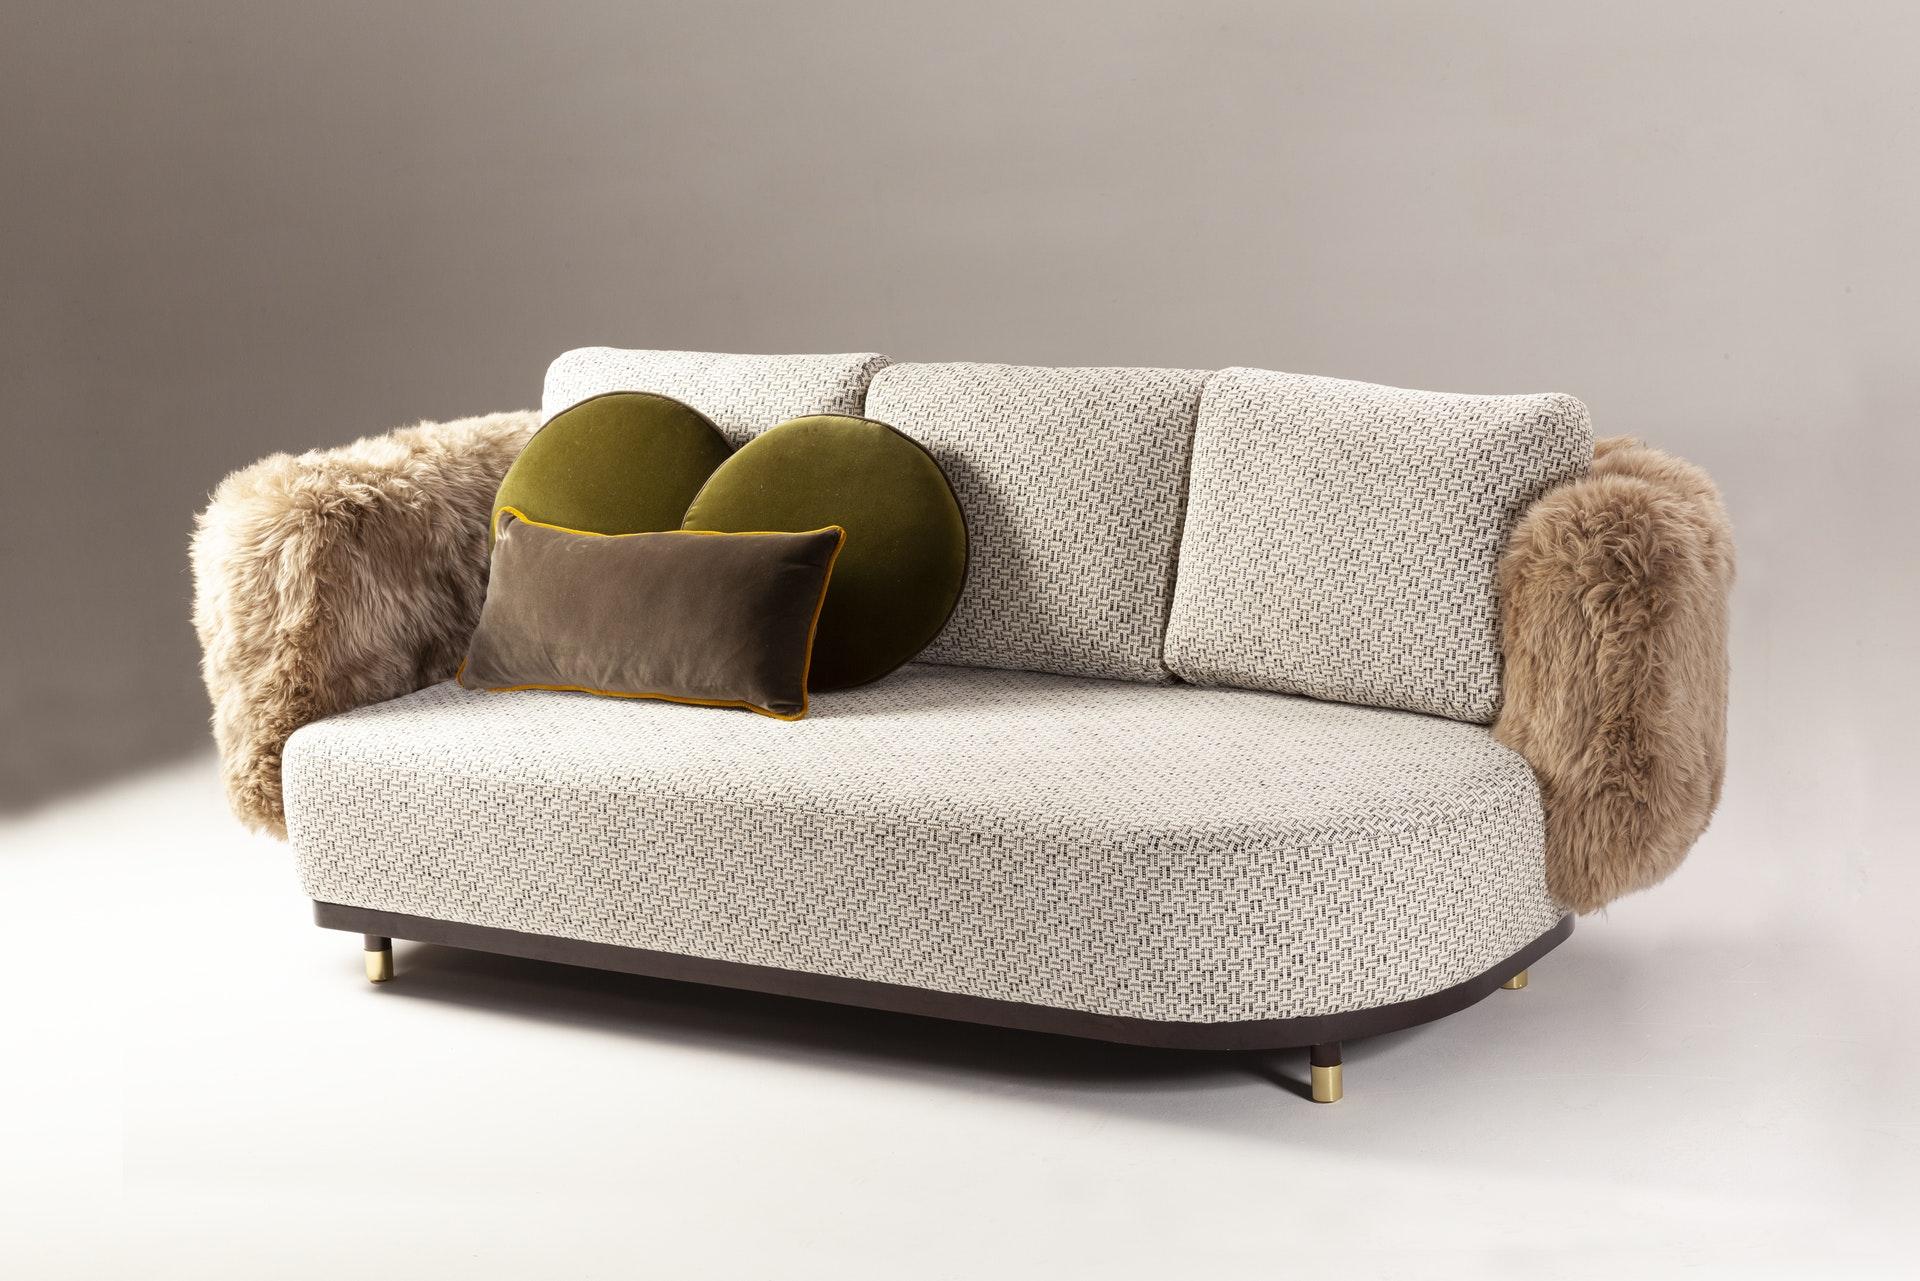 Couch für einen Mann 240 von Dooq
Maße: B 240 x T 105 x H 83 cm
MATERIALIEN: Polsterung und Keder aus Stoff oder Leder, Fransen.

DOOQ ist ein Designunternehmen, das den Luxus des Wohnens zelebriert. Wir entwerfen Designs, die die Sinne anregen